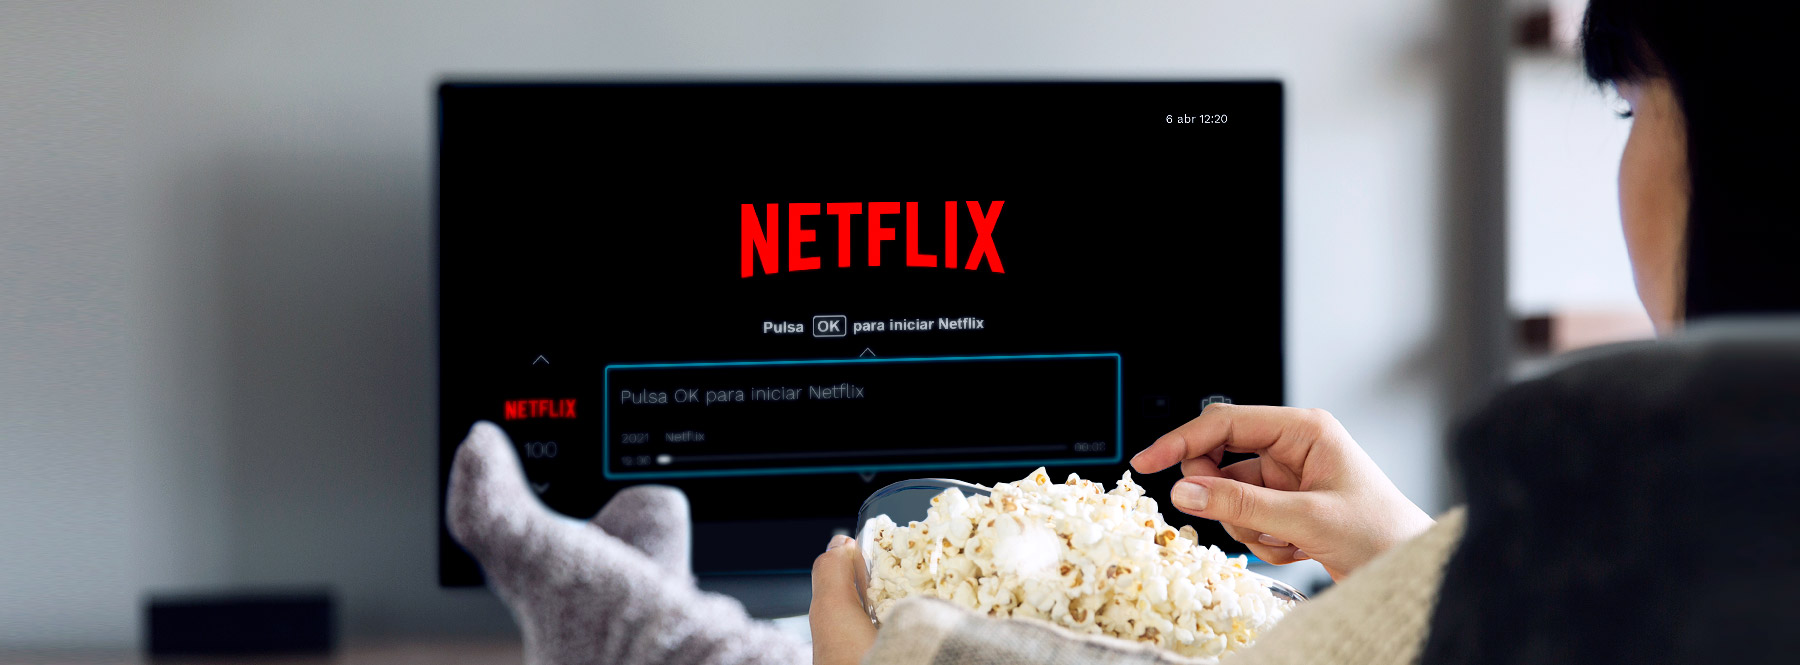 Cómo darse de alta en Netflix con Movistar